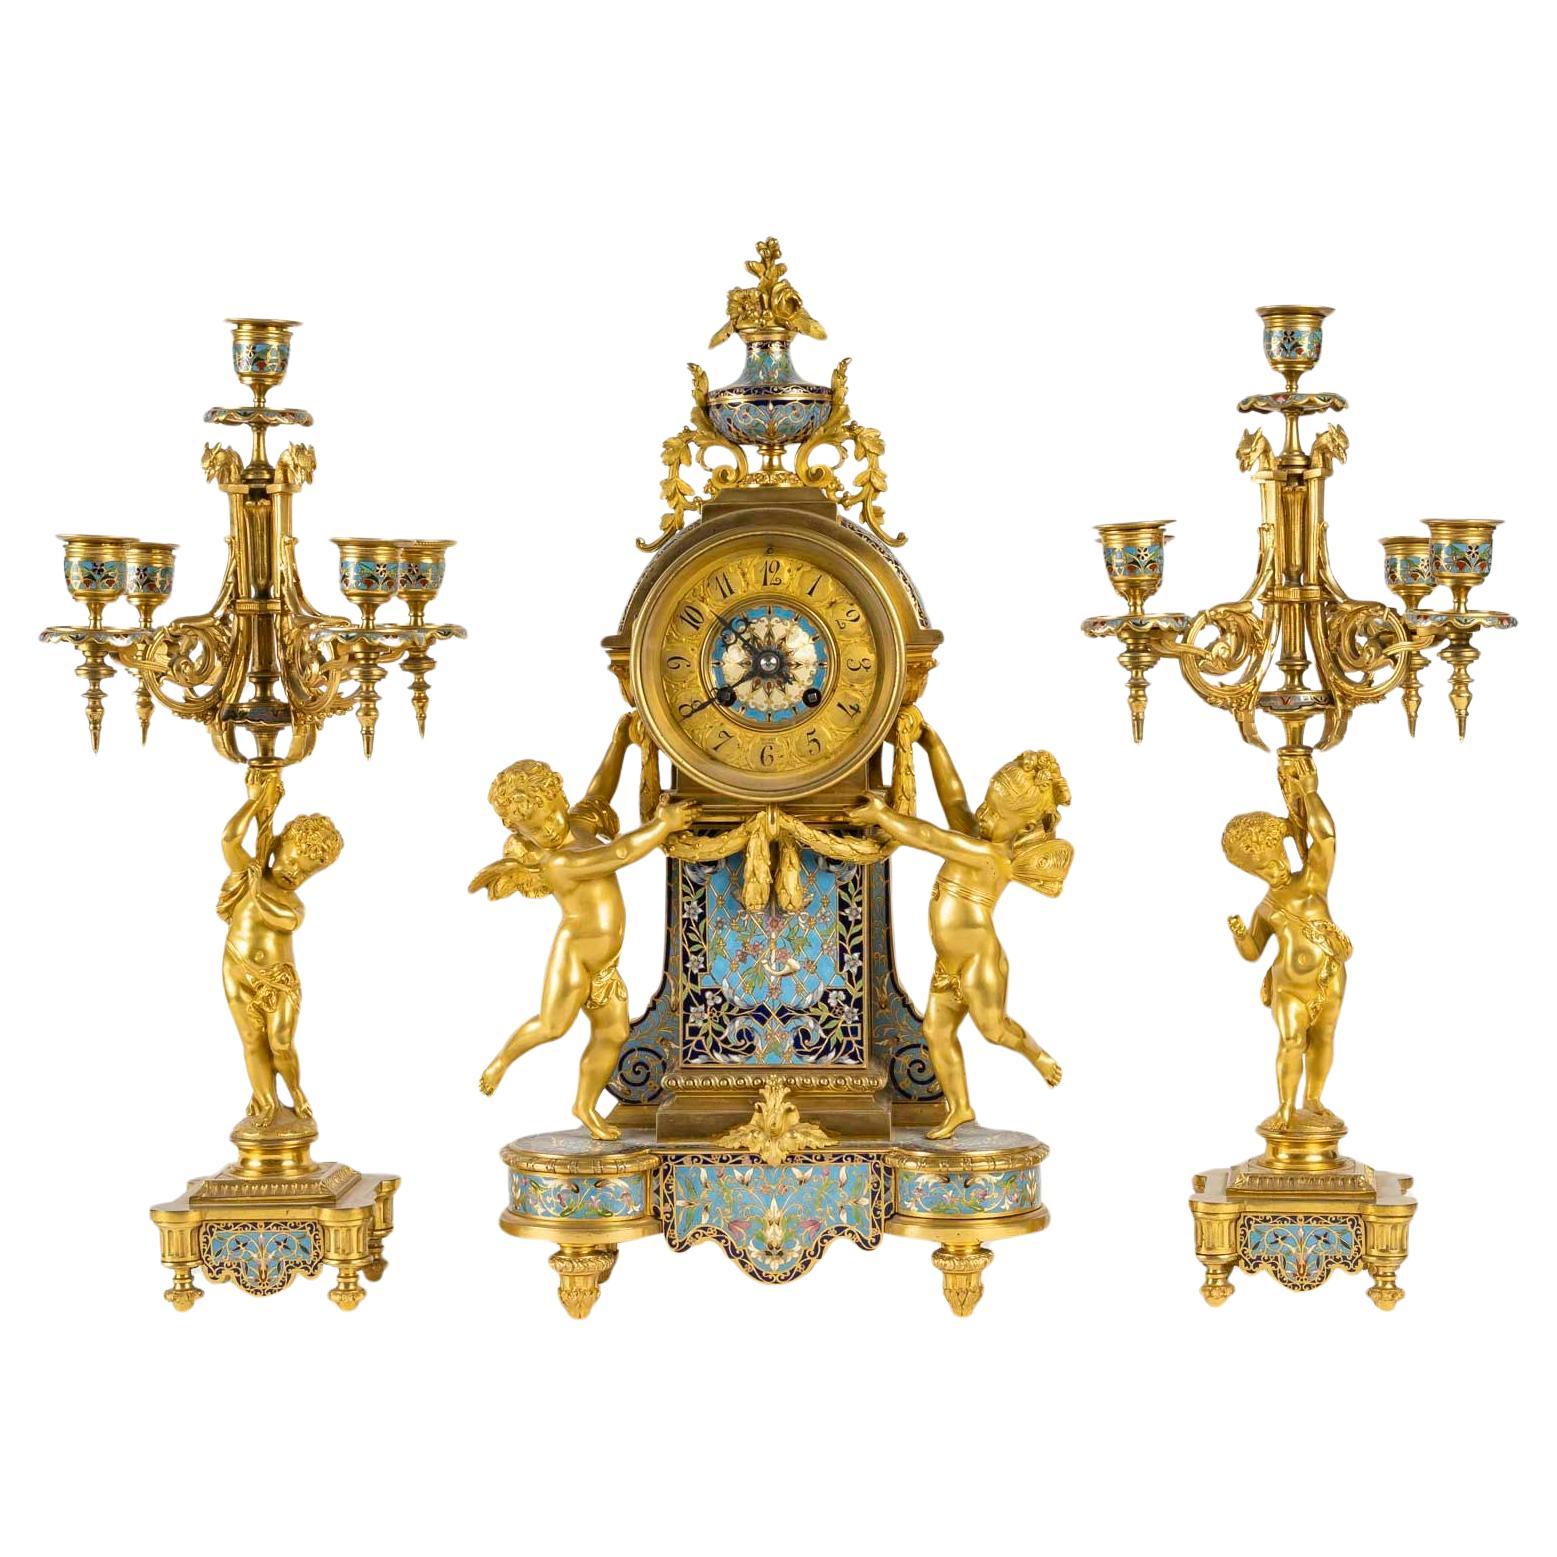 Cheminée et chandeliers en bronze doré et cloisonné, période Napoléon.